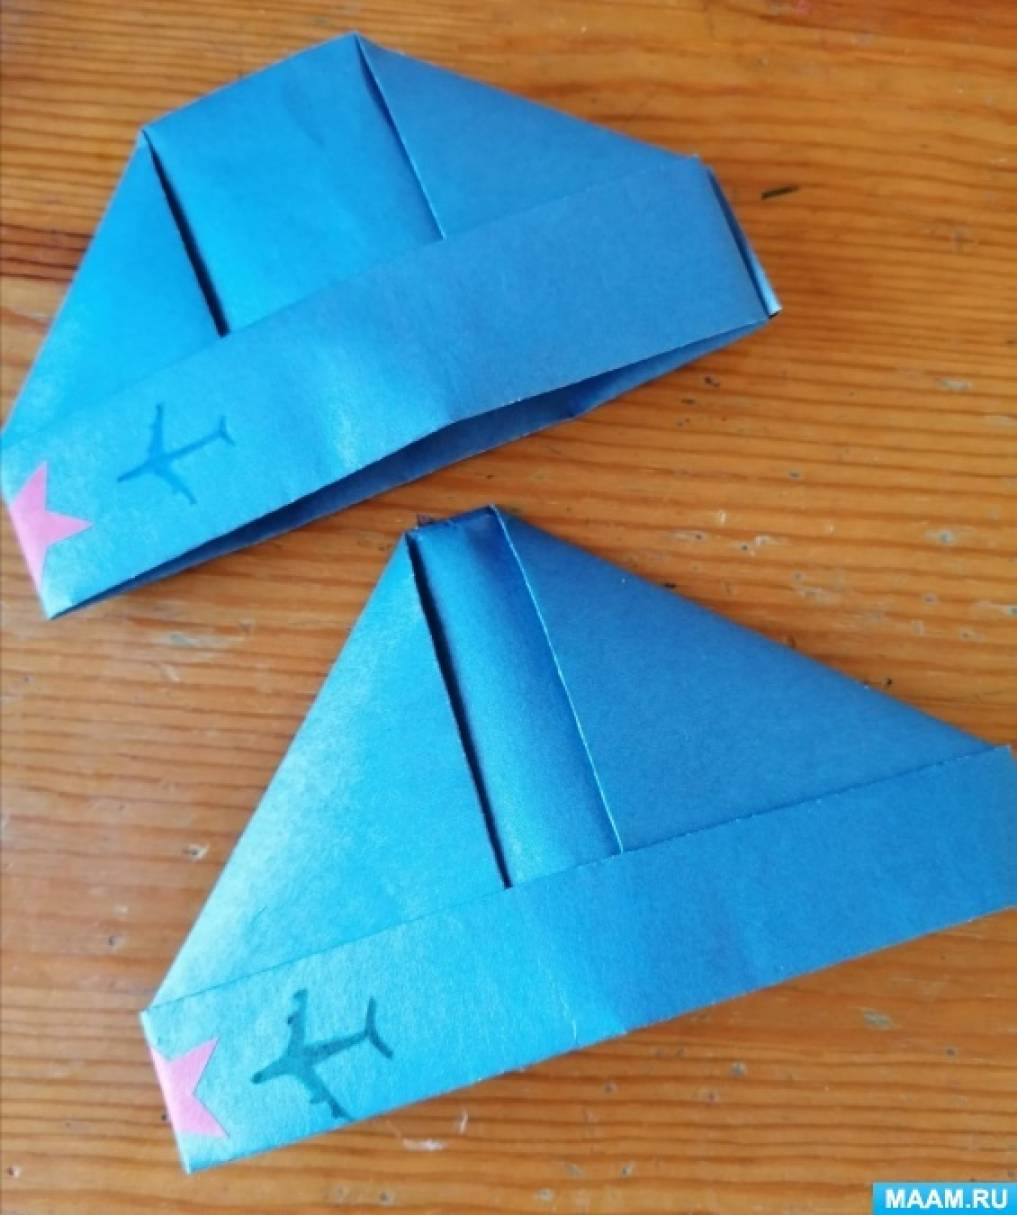 Как сделать танки оригами - пошаговая схема и видео